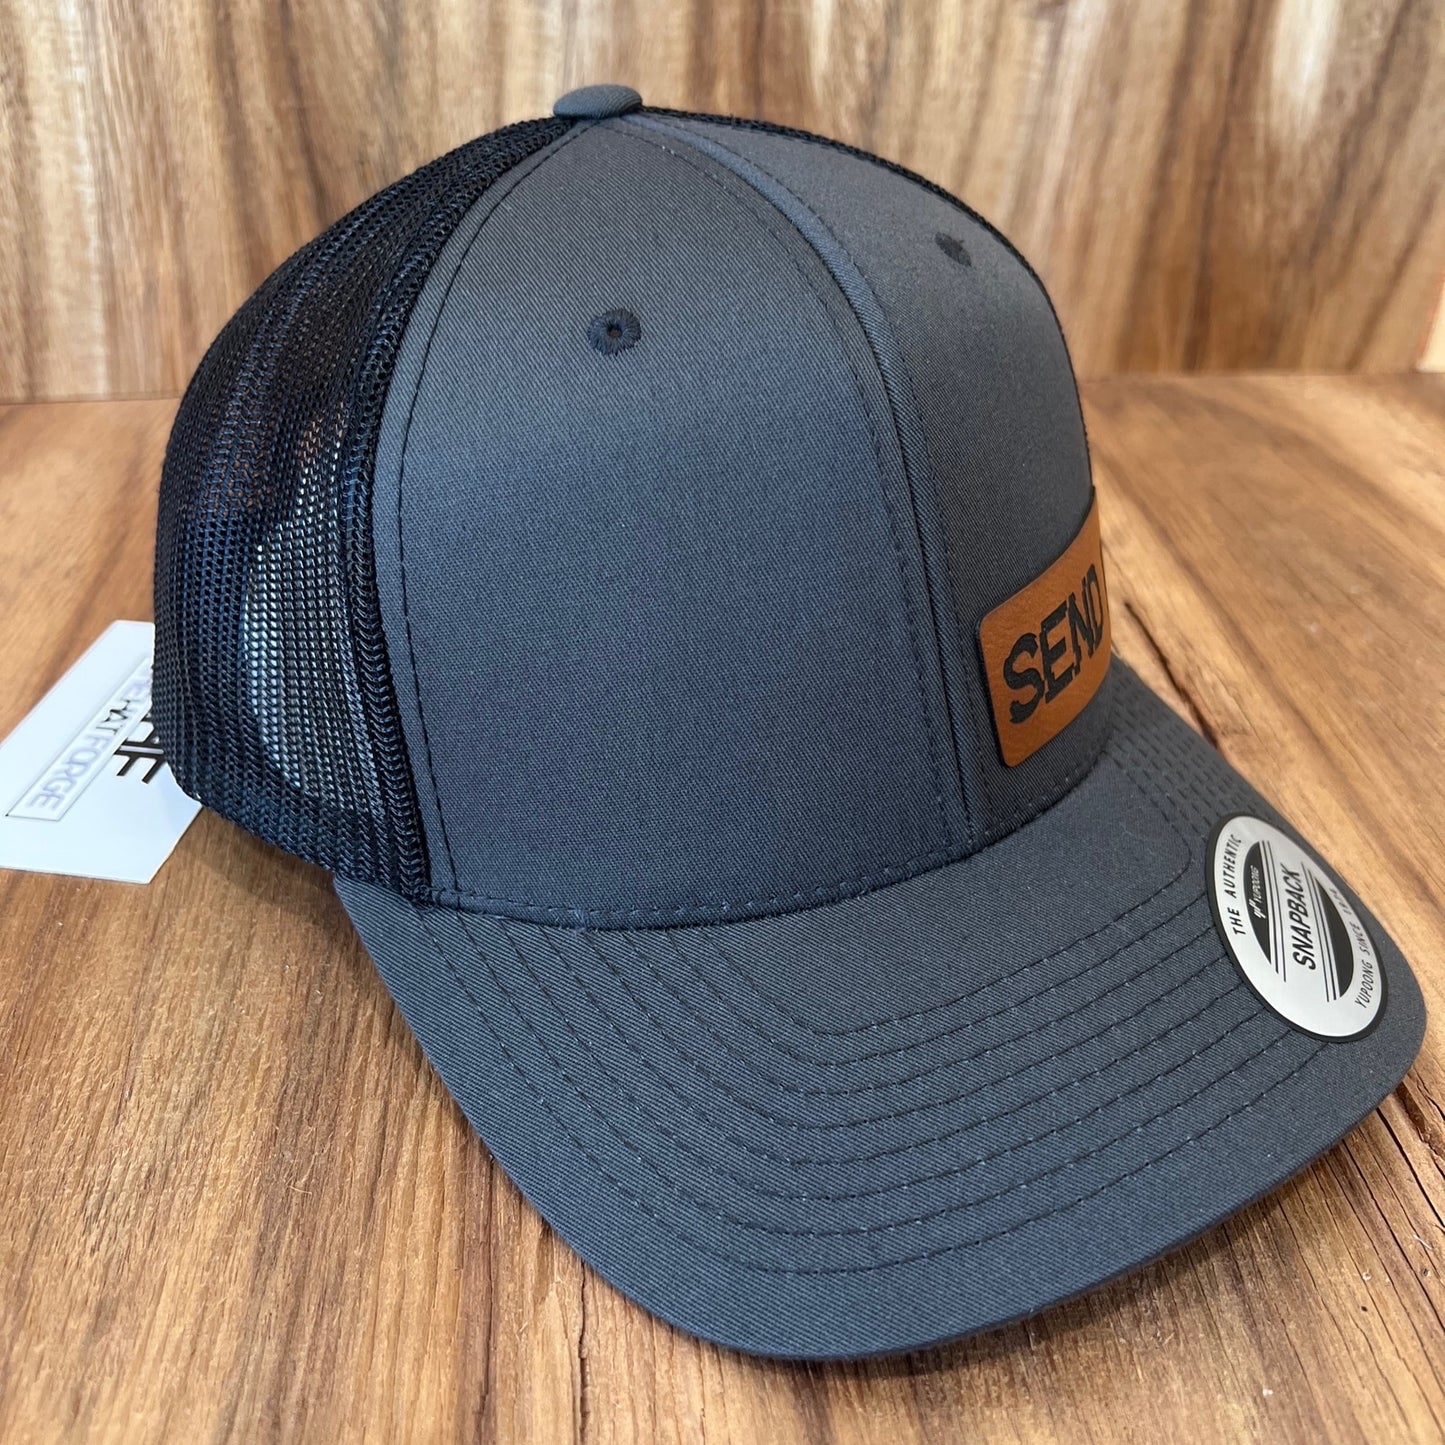 SEND IT - Yupoong 6606 SnapBack Trucker Hat